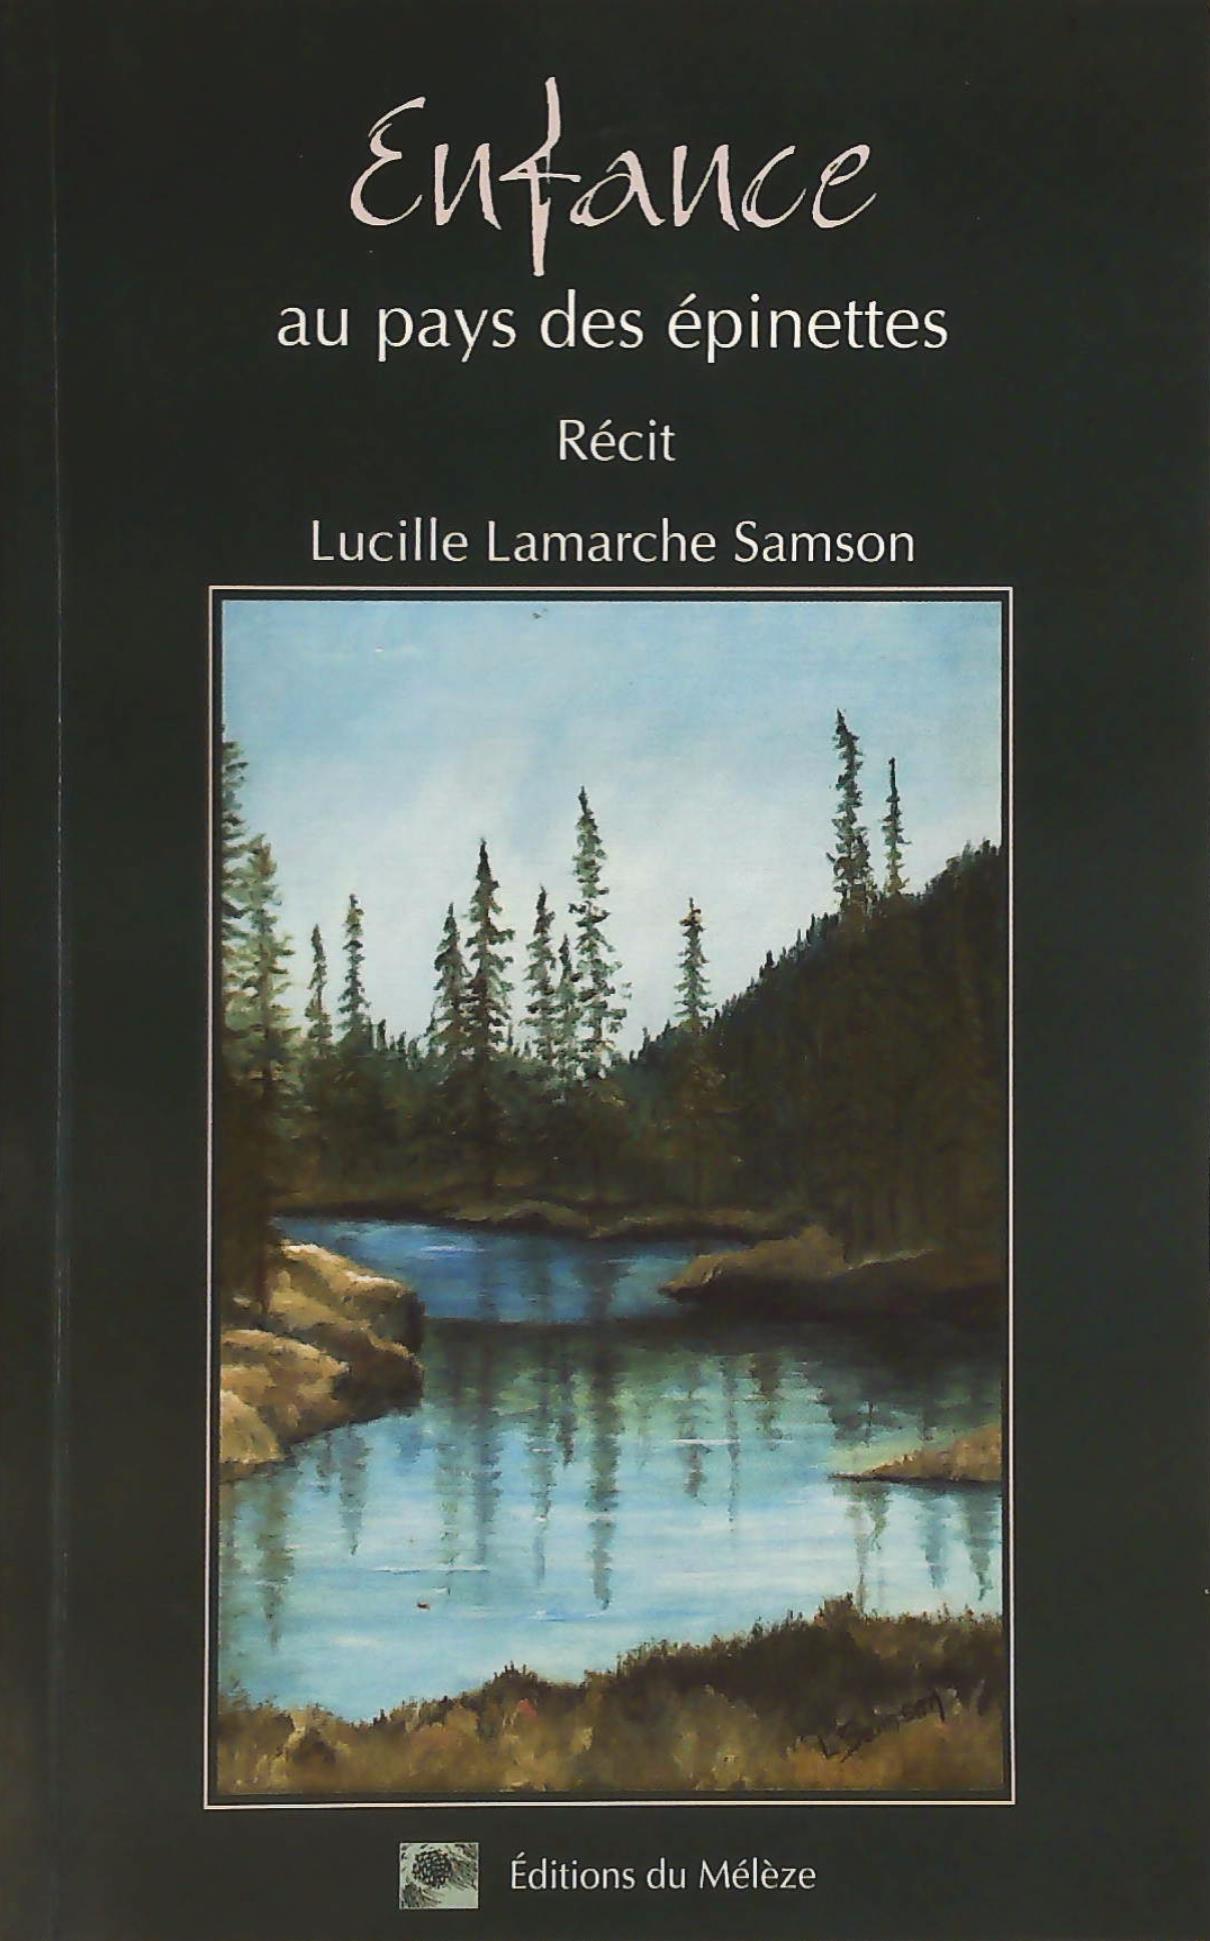 Livre ISBN 2980391808 Enfance au pays des épinettes (Lucille Lamarche Samson)